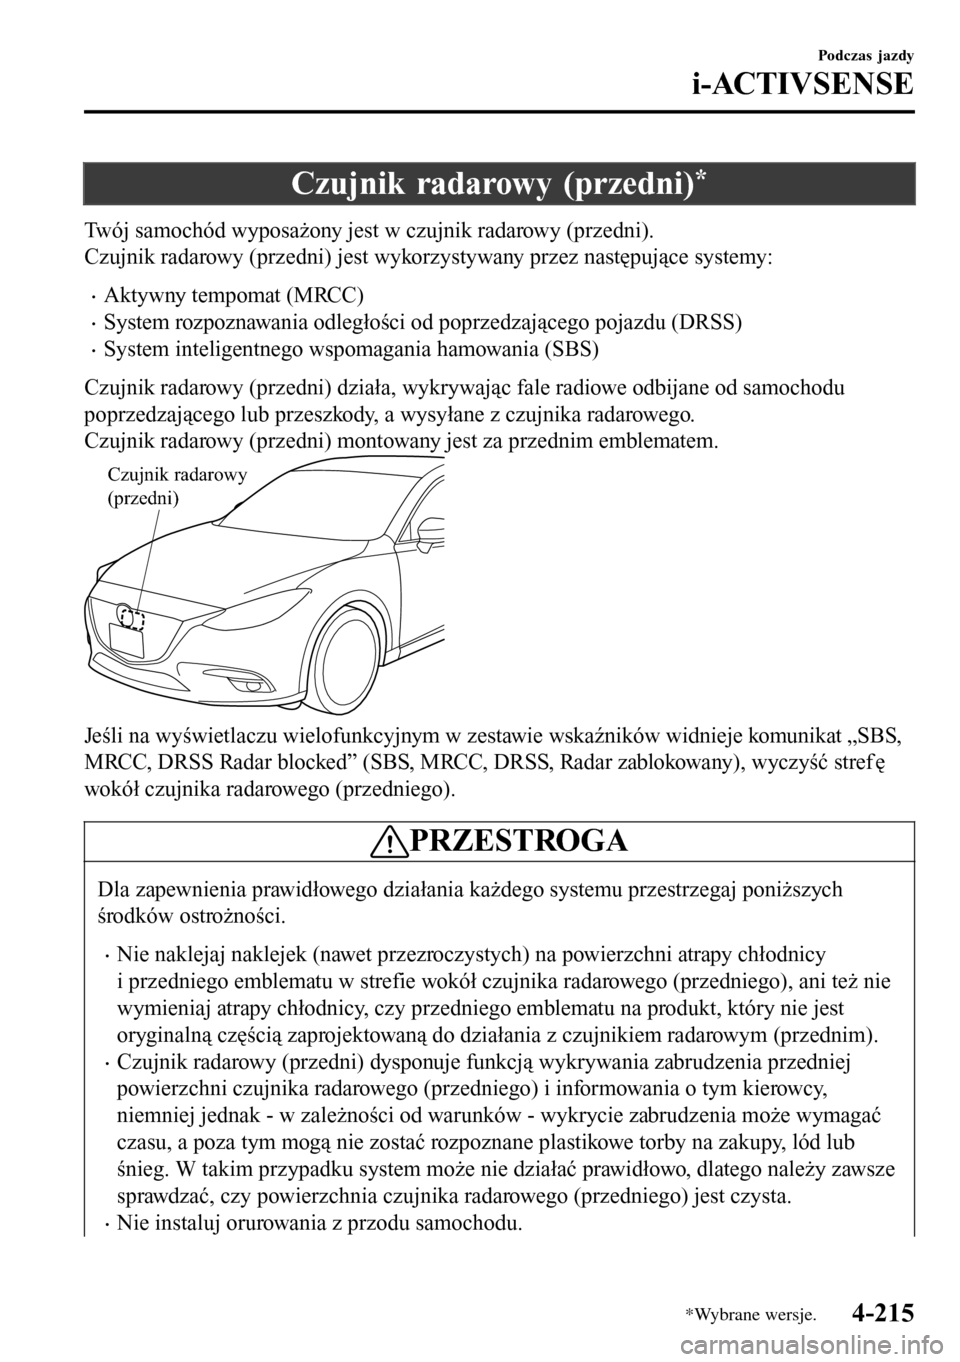 MAZDA MODEL 3 HATCHBACK 2016  Instrukcja Obsługi (in Polish) Czujnik radarowy (przedni)*
Twój samochód wyposażony jest w czujnik radarowy (przedni).
Czujnik radarowy (przedni) jest wykorzystywany przez następujące systemy:
•Aktywny tempomat (MRCC)
•Sys